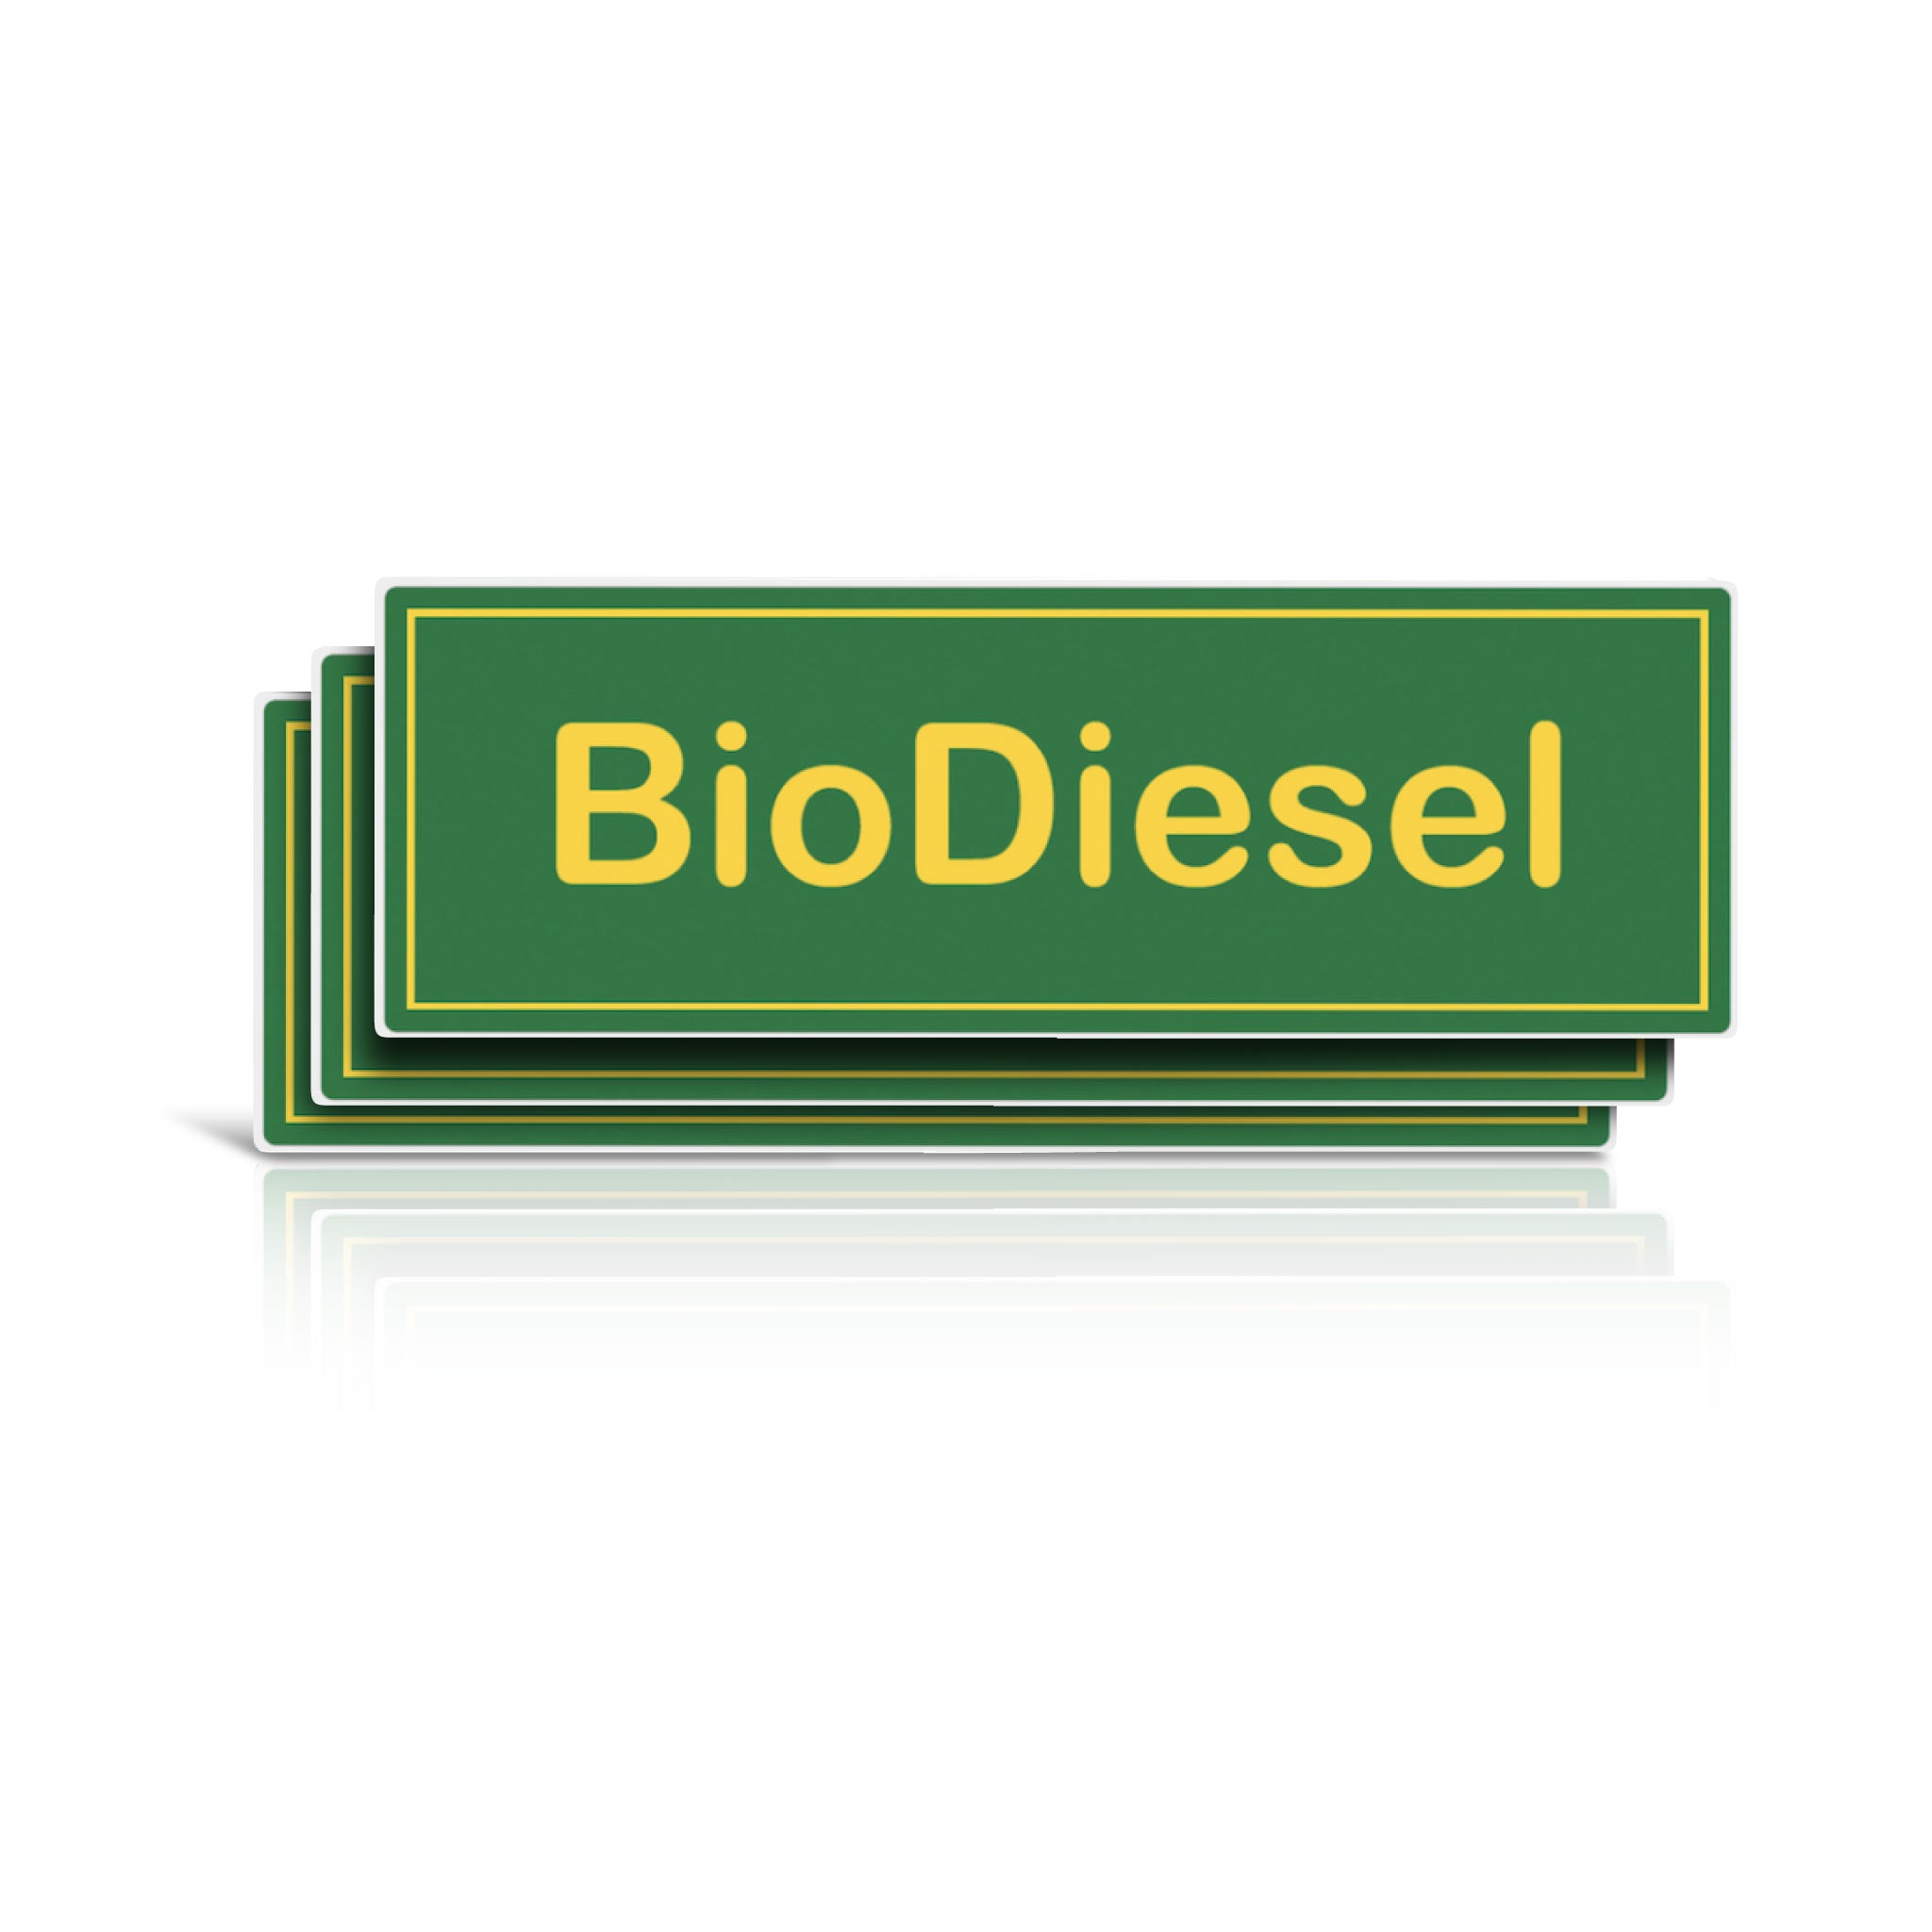 biodiesel-stickers.jpg